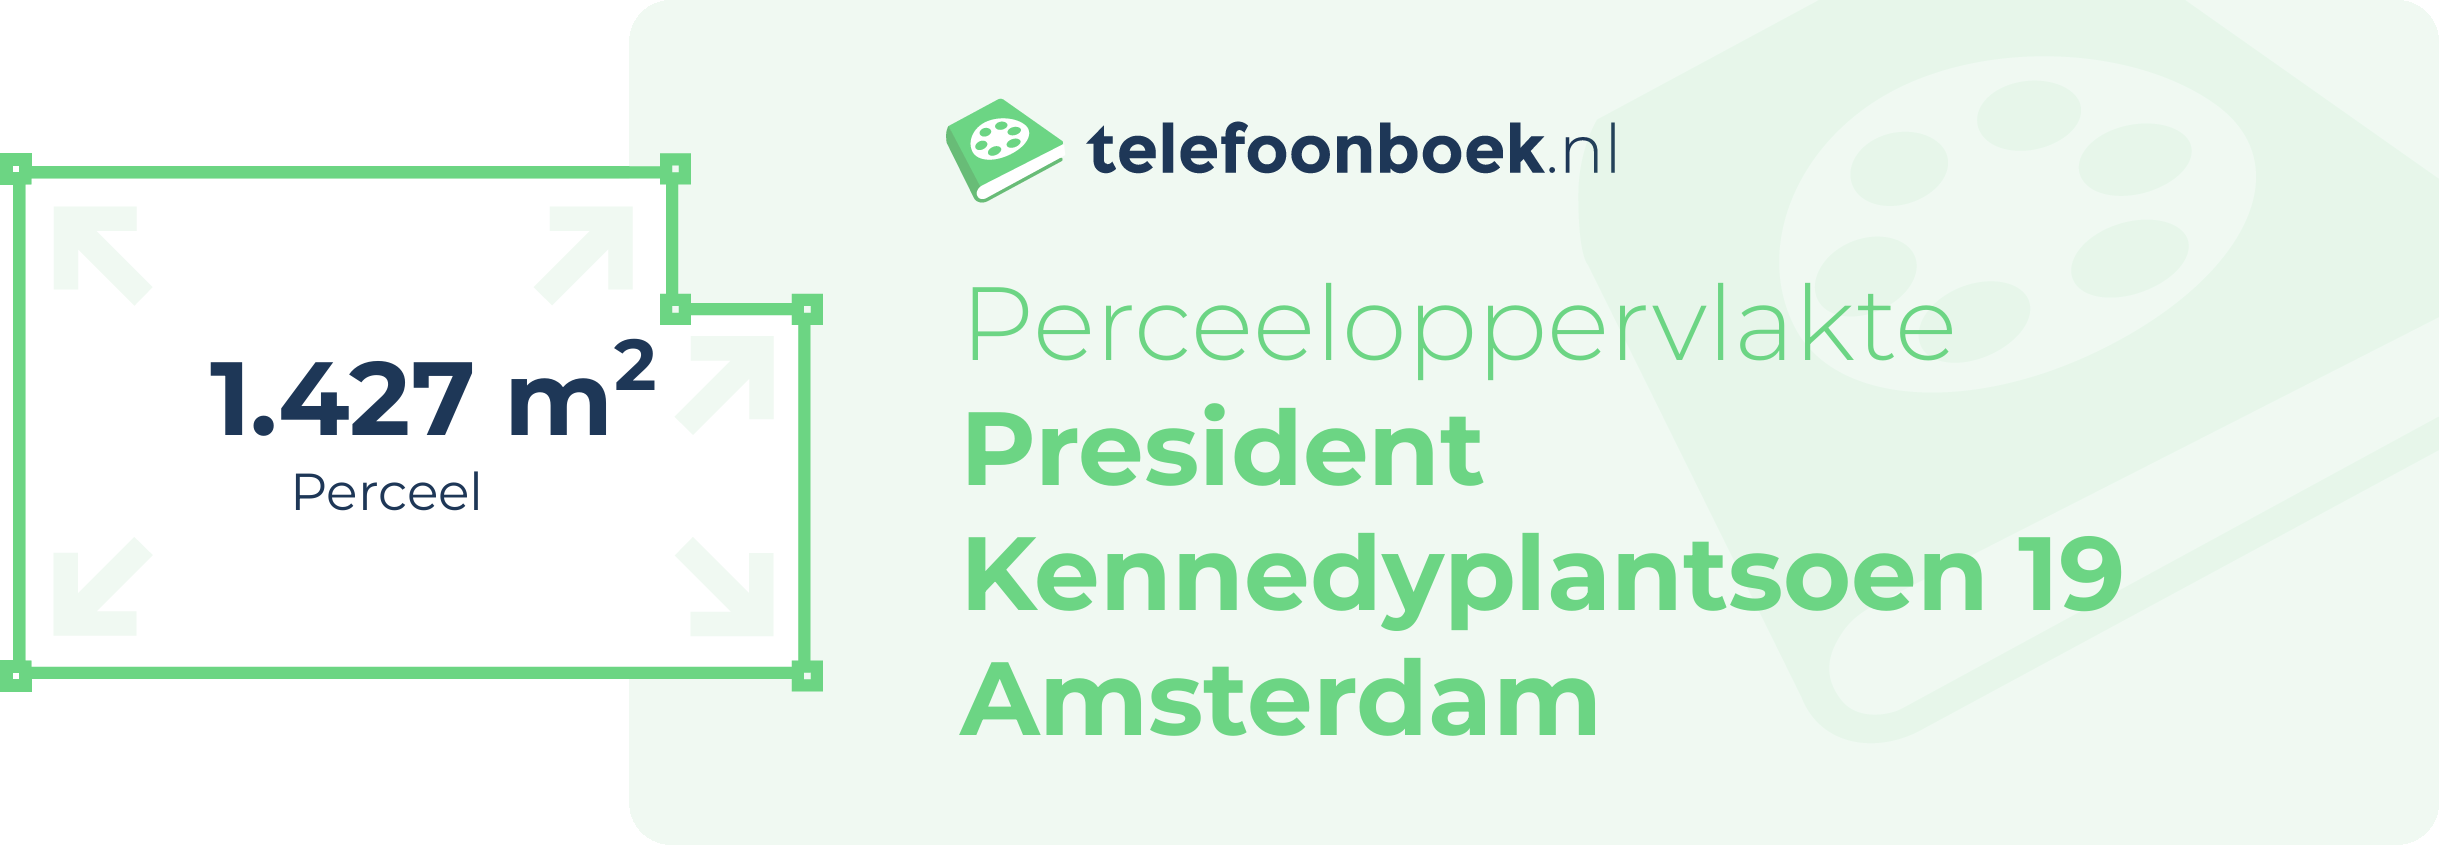 Perceeloppervlakte President Kennedyplantsoen 19 Amsterdam